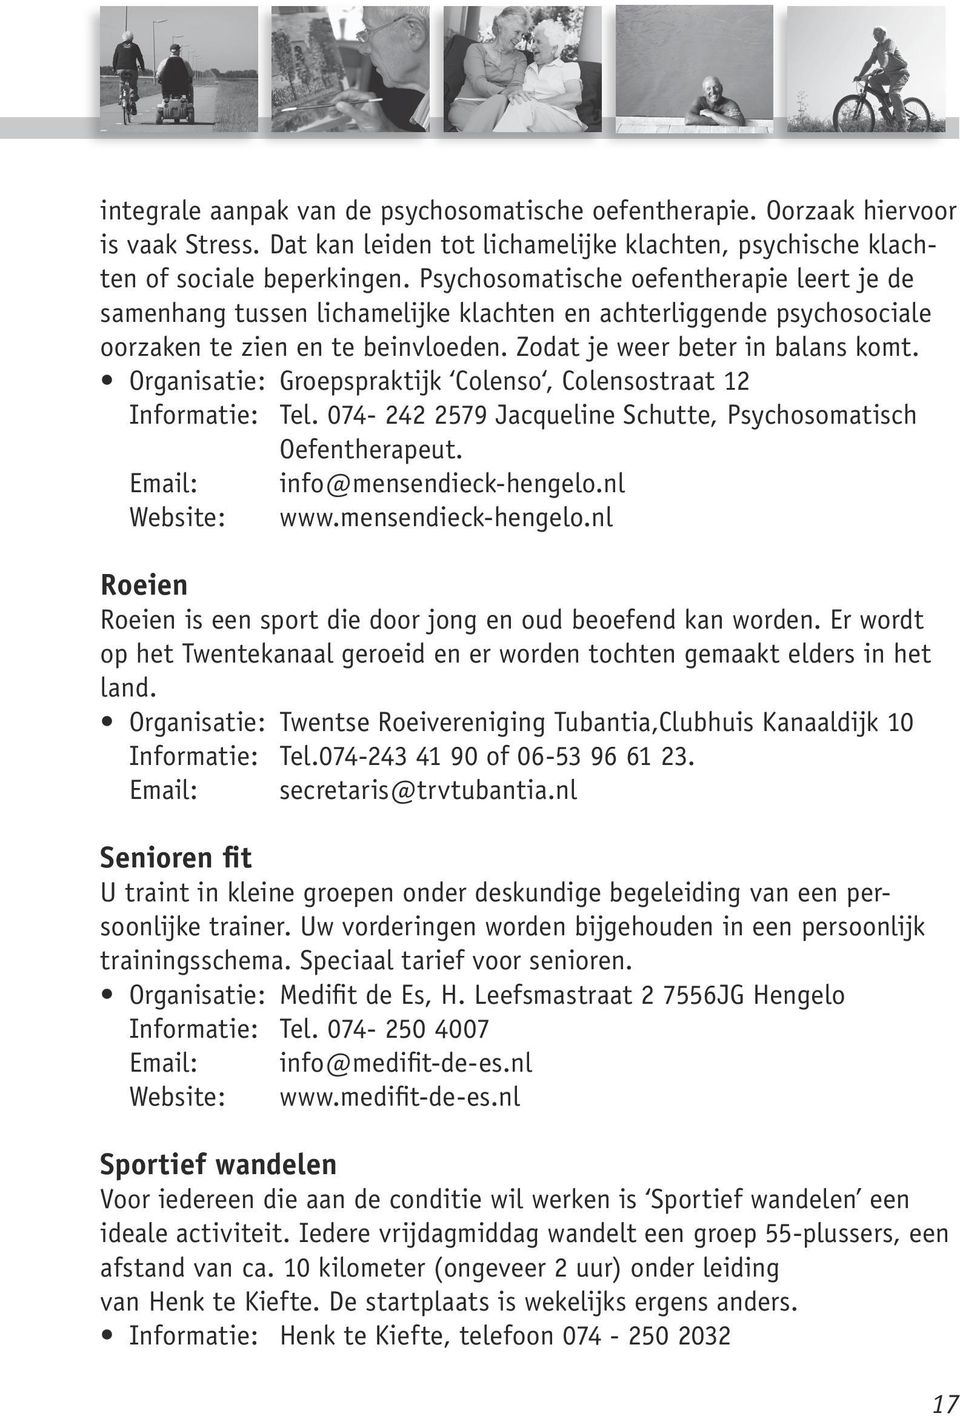 Organisatie: Groepspraktijk Colenso, Colensostraat 12 Informatie: Tel. 074-242 2579 Jacqueline Schutte, Psychosomatisch Oefentherapeut. Email: info@mensendieck-hengelo.nl Website: www.